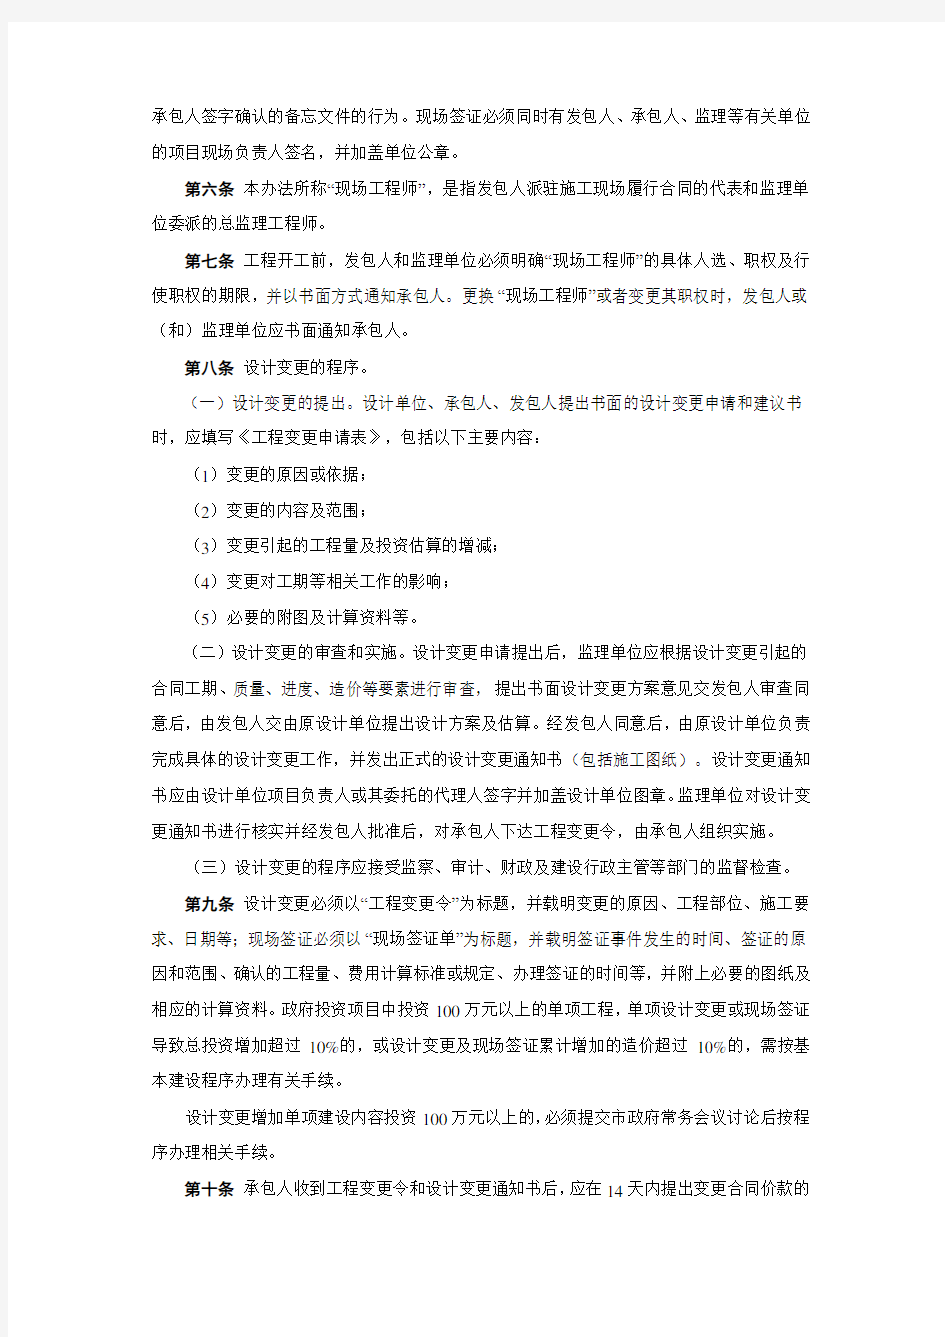 惠州市建设工程设计变更及现场签证管理办法